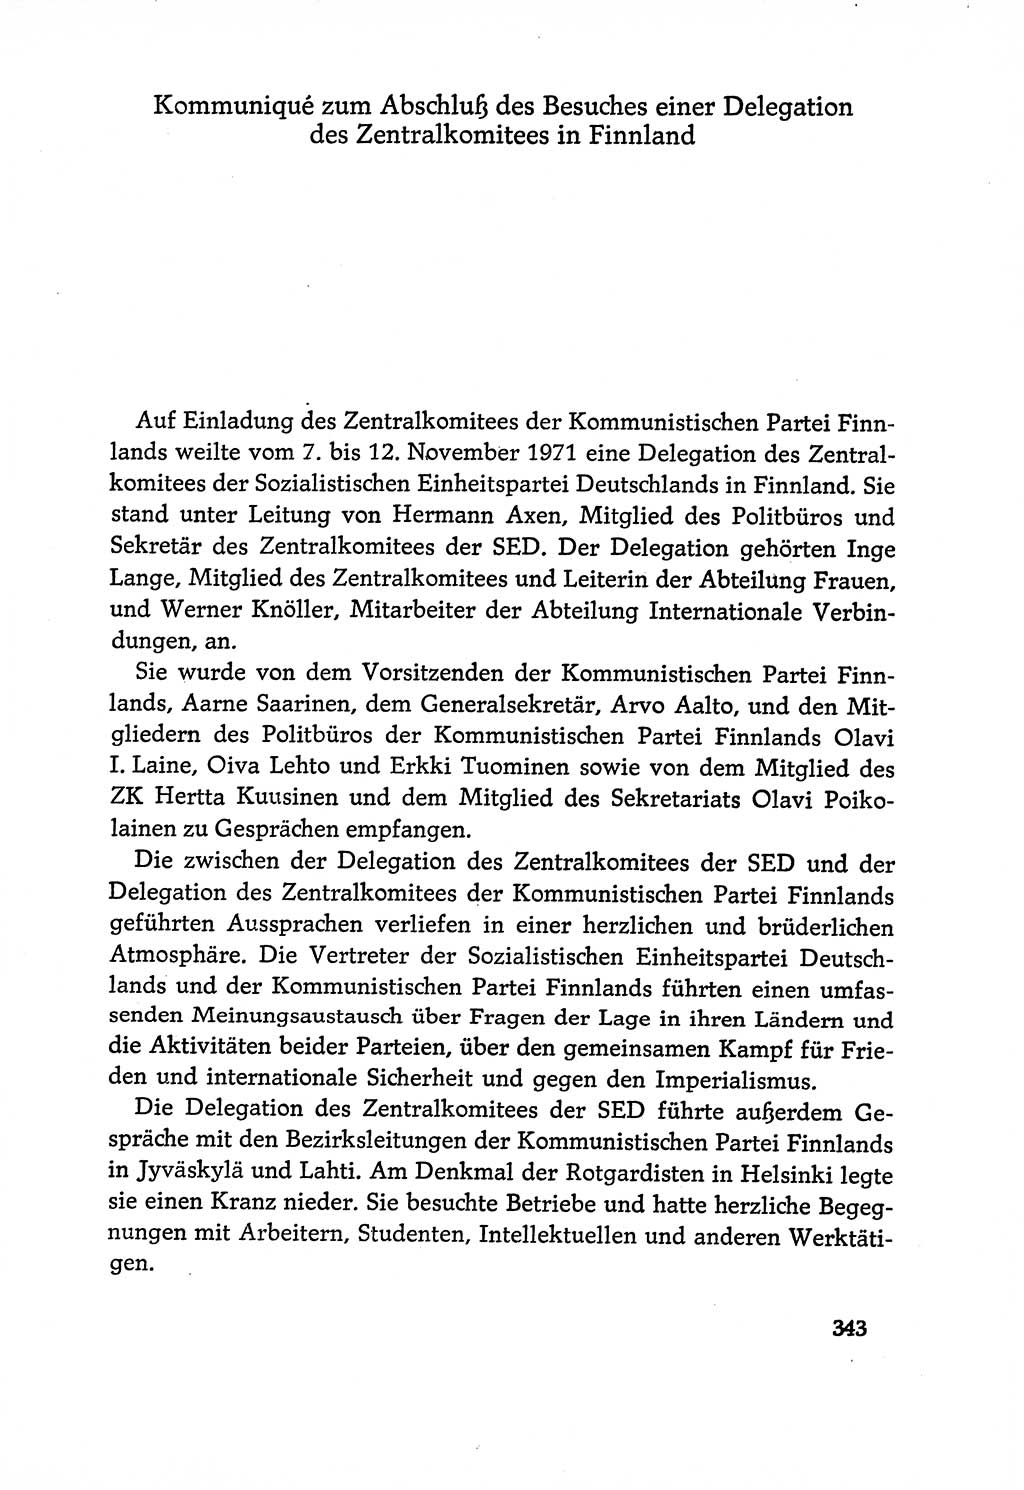 Dokumente der Sozialistischen Einheitspartei Deutschlands (SED) [Deutsche Demokratische Republik (DDR)] 1970-1971, Seite 343 (Dok. SED DDR 1970-1971, S. 343)